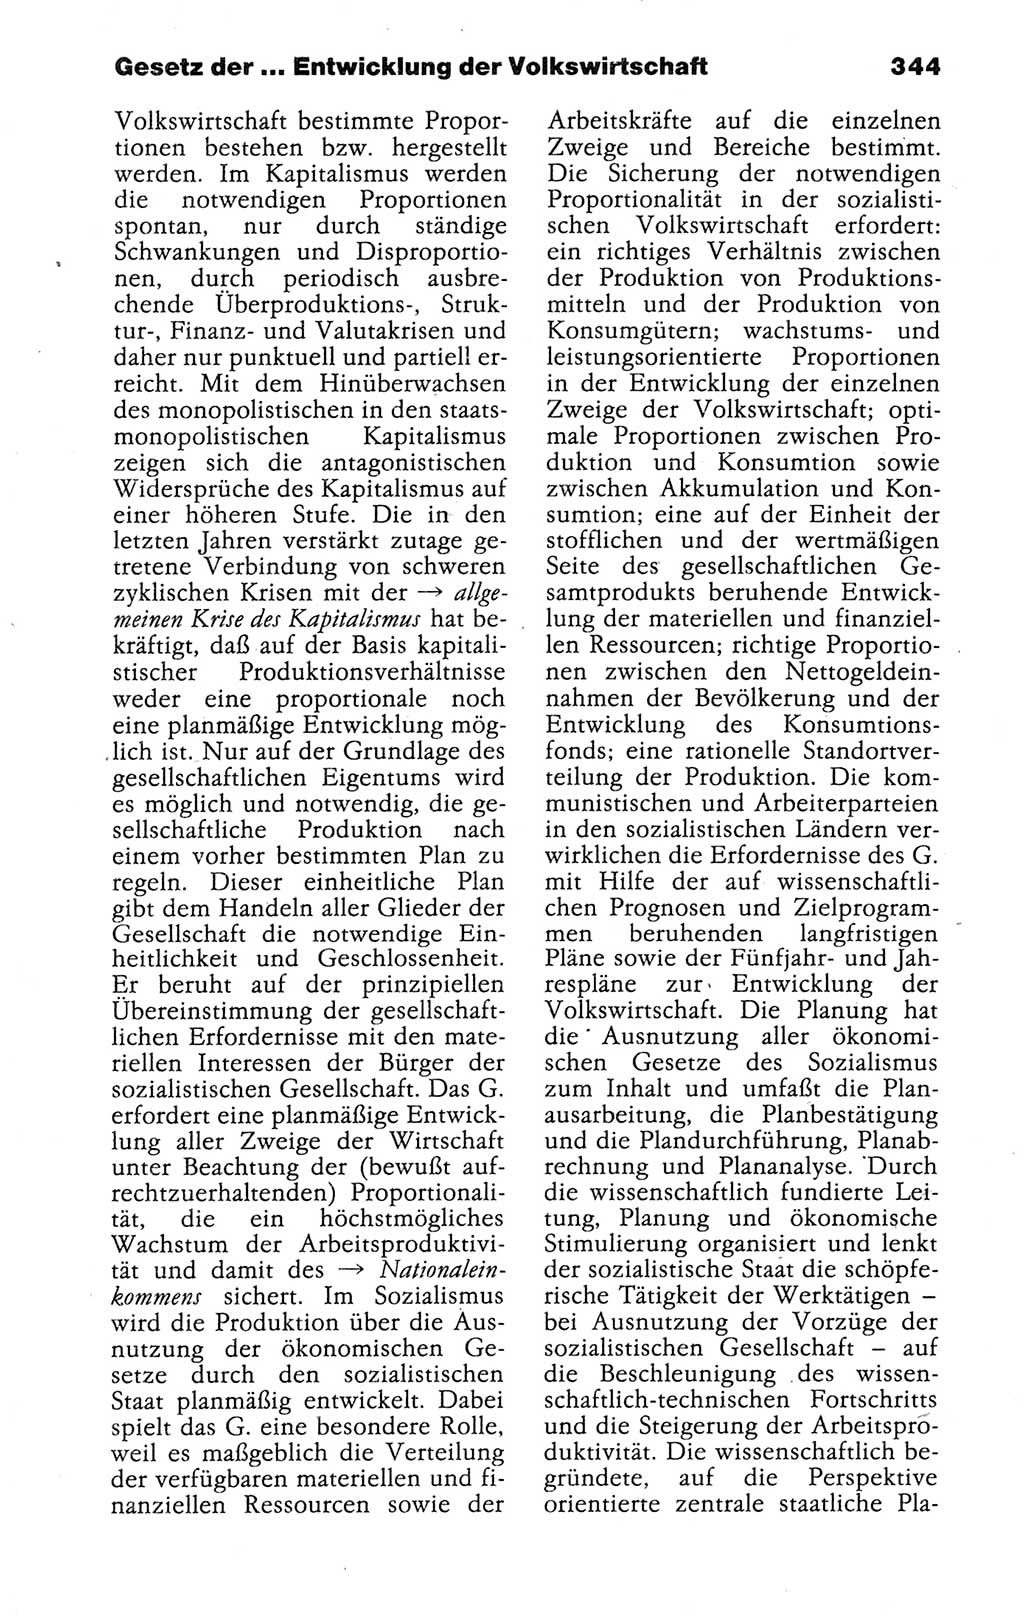 Kleines politisches Wörterbuch [Deutsche Demokratische Republik (DDR)] 1988, Seite 344 (Kl. pol. Wb. DDR 1988, S. 344)